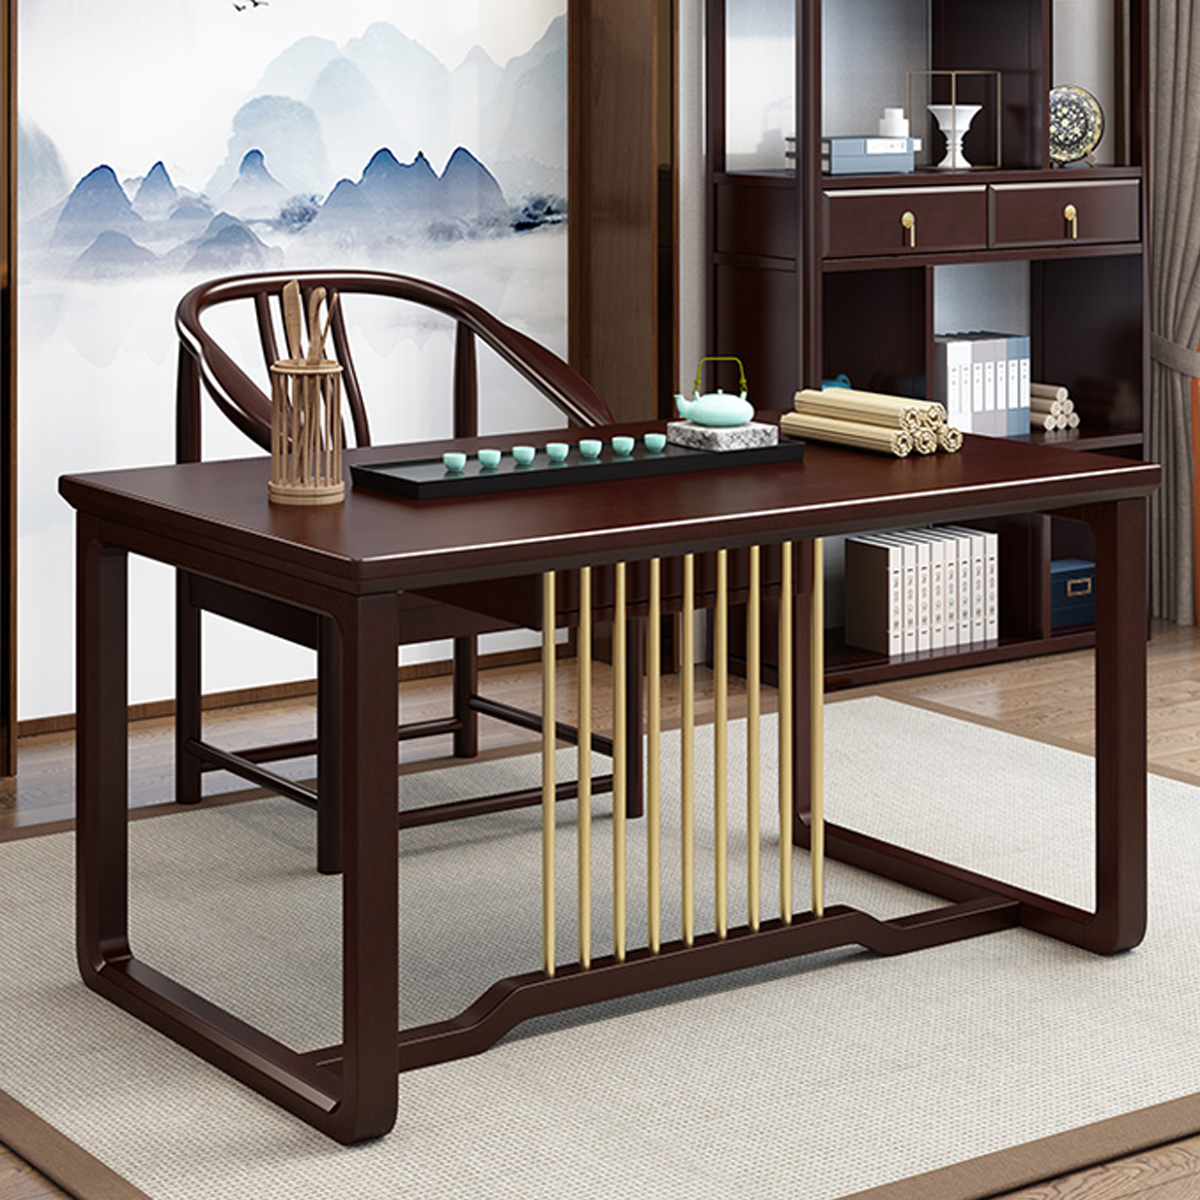 木格尚品 新中式书桌椅组合轻奢实木写字书法画桌办公学习桌书房家具